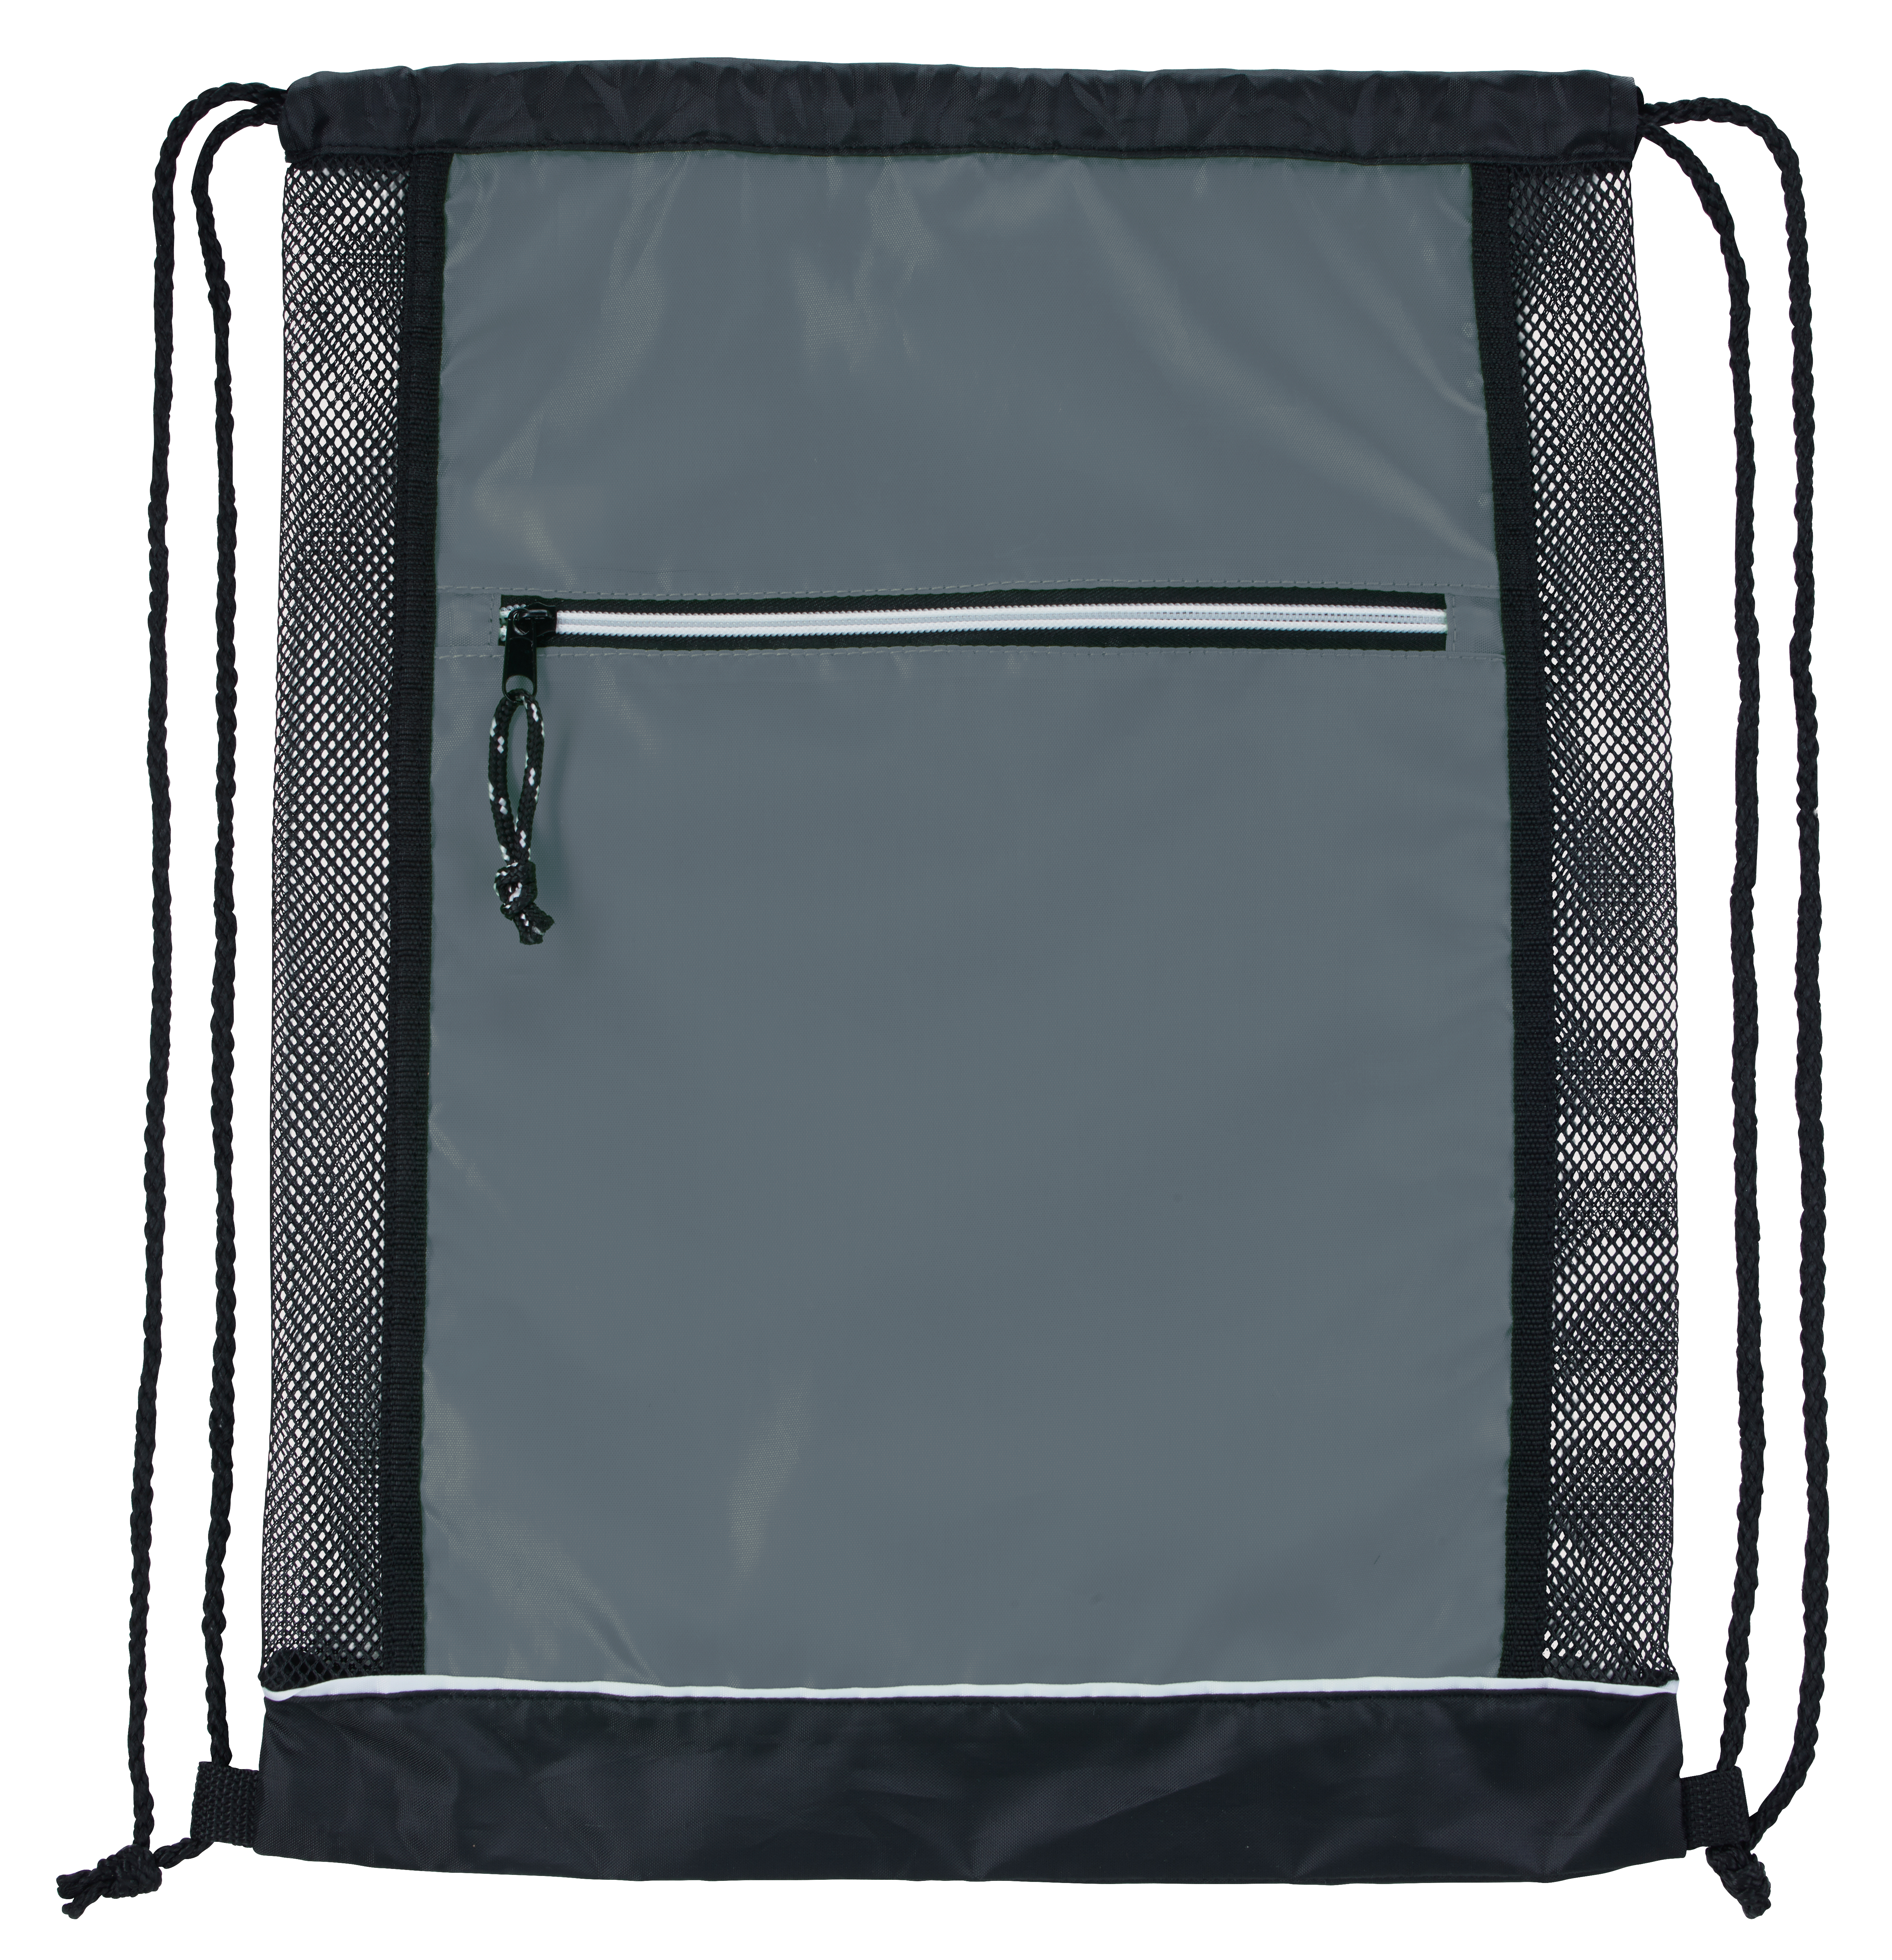 Good Value 16124 - Big Vented Drawstring Backpack